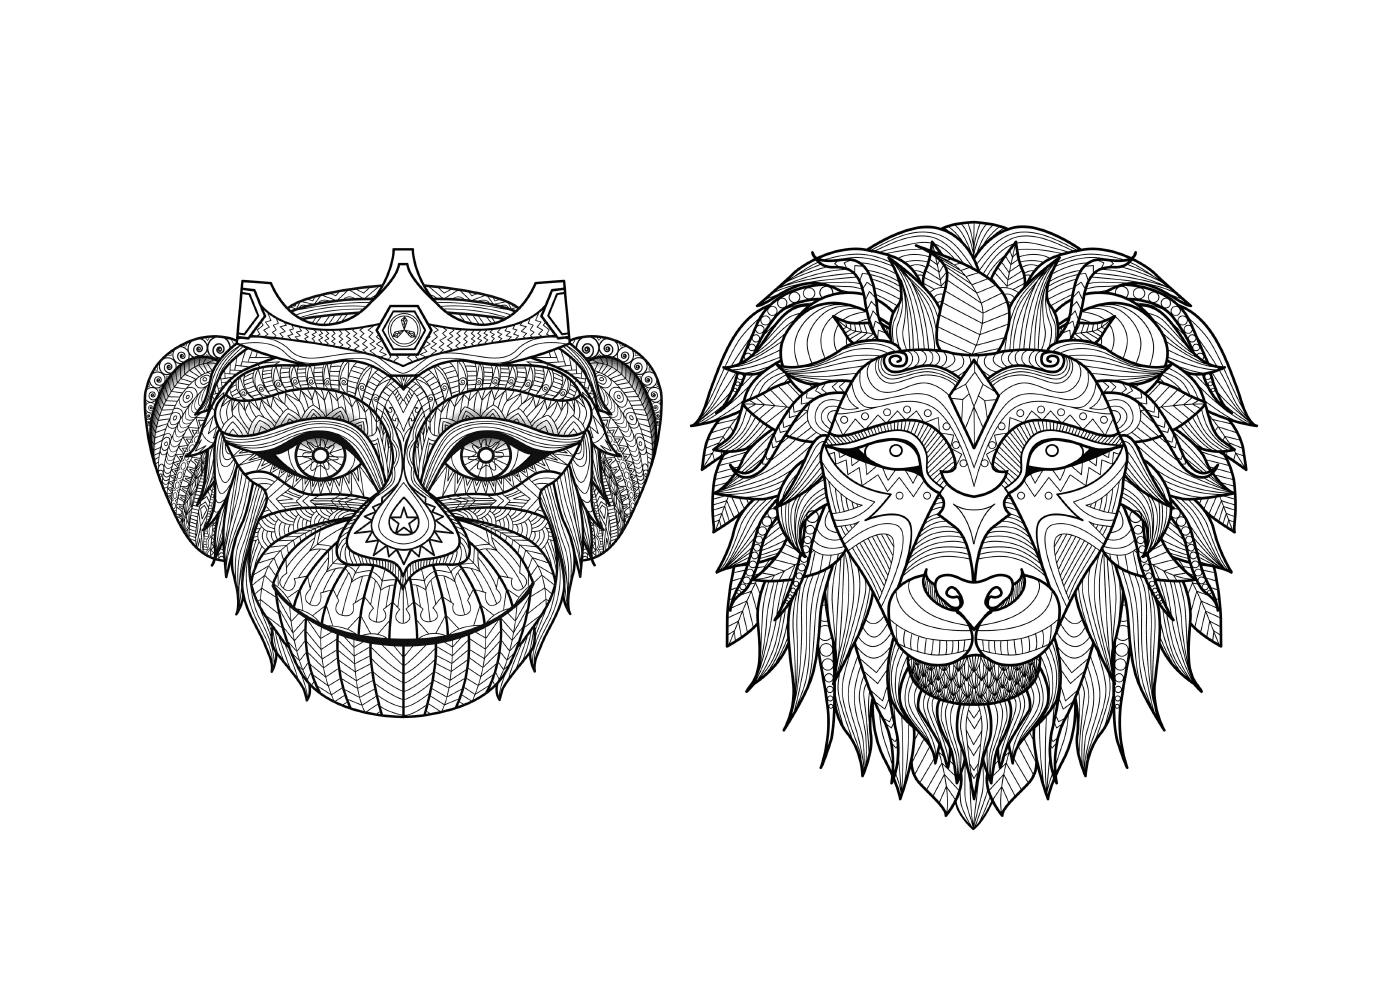  Два черно-белых рисунка льва и обезьяны 